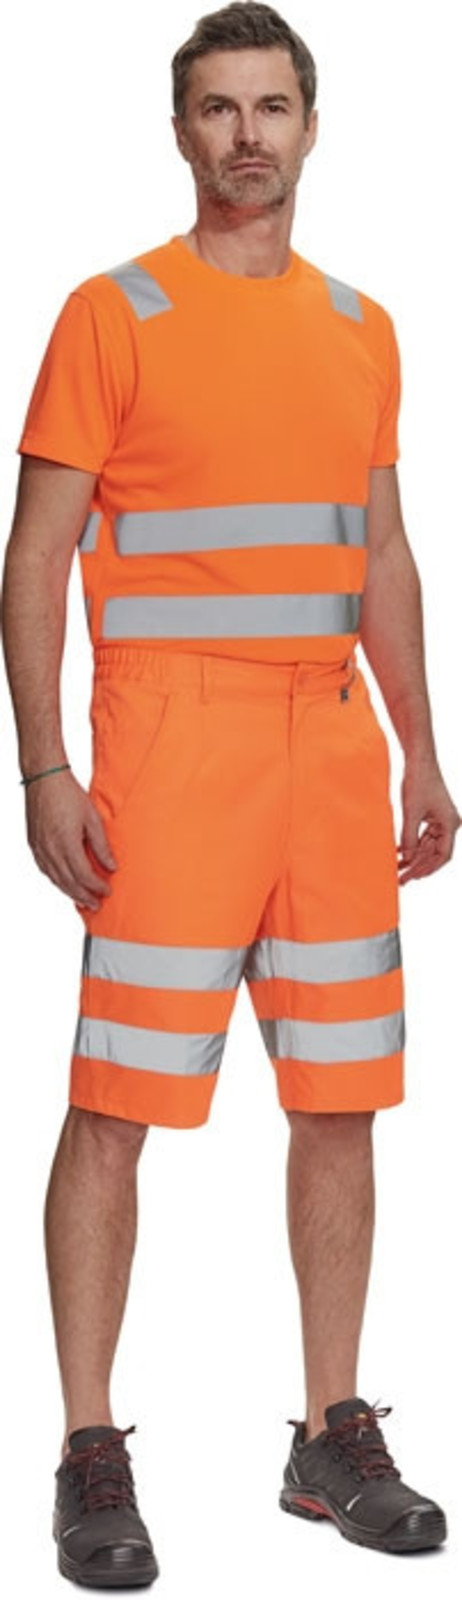 Pánske reflexné šortky Cerva Ciudades Ferrol HV - veľkosť: 54, farba: oranžová